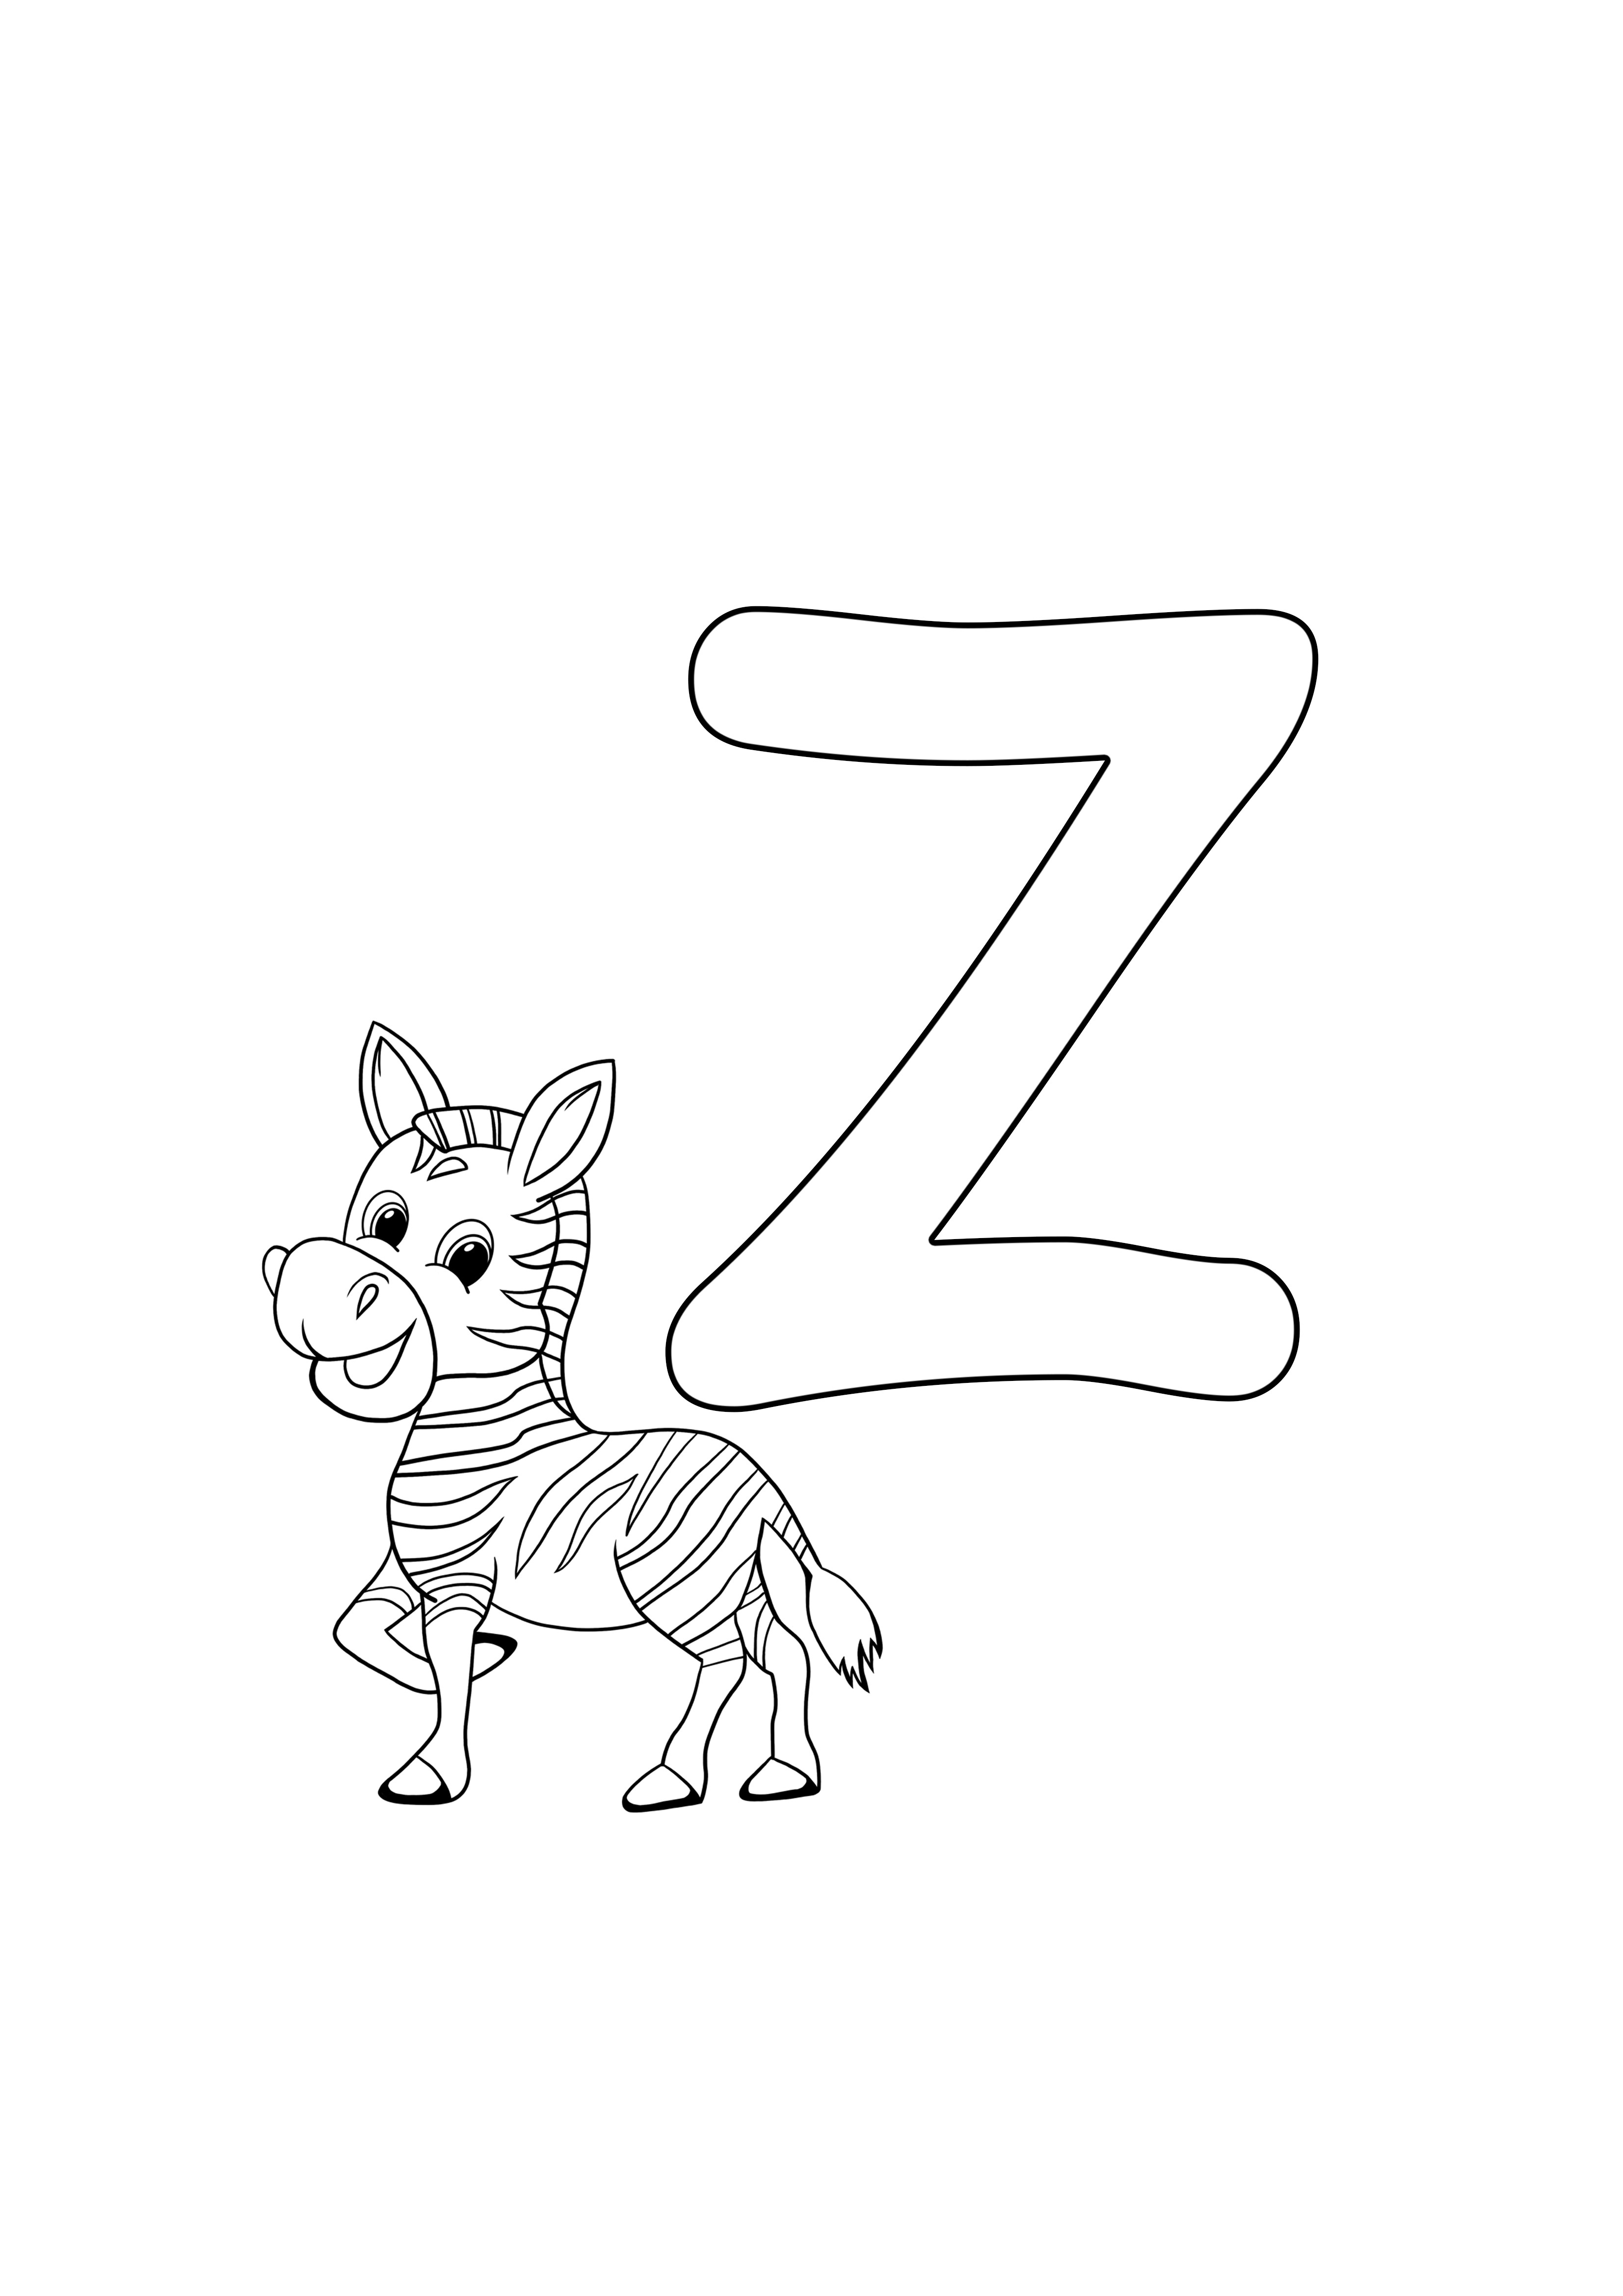 z este pentru zebra gratuit pentru a imprima, gratuit pentru a colora pagina